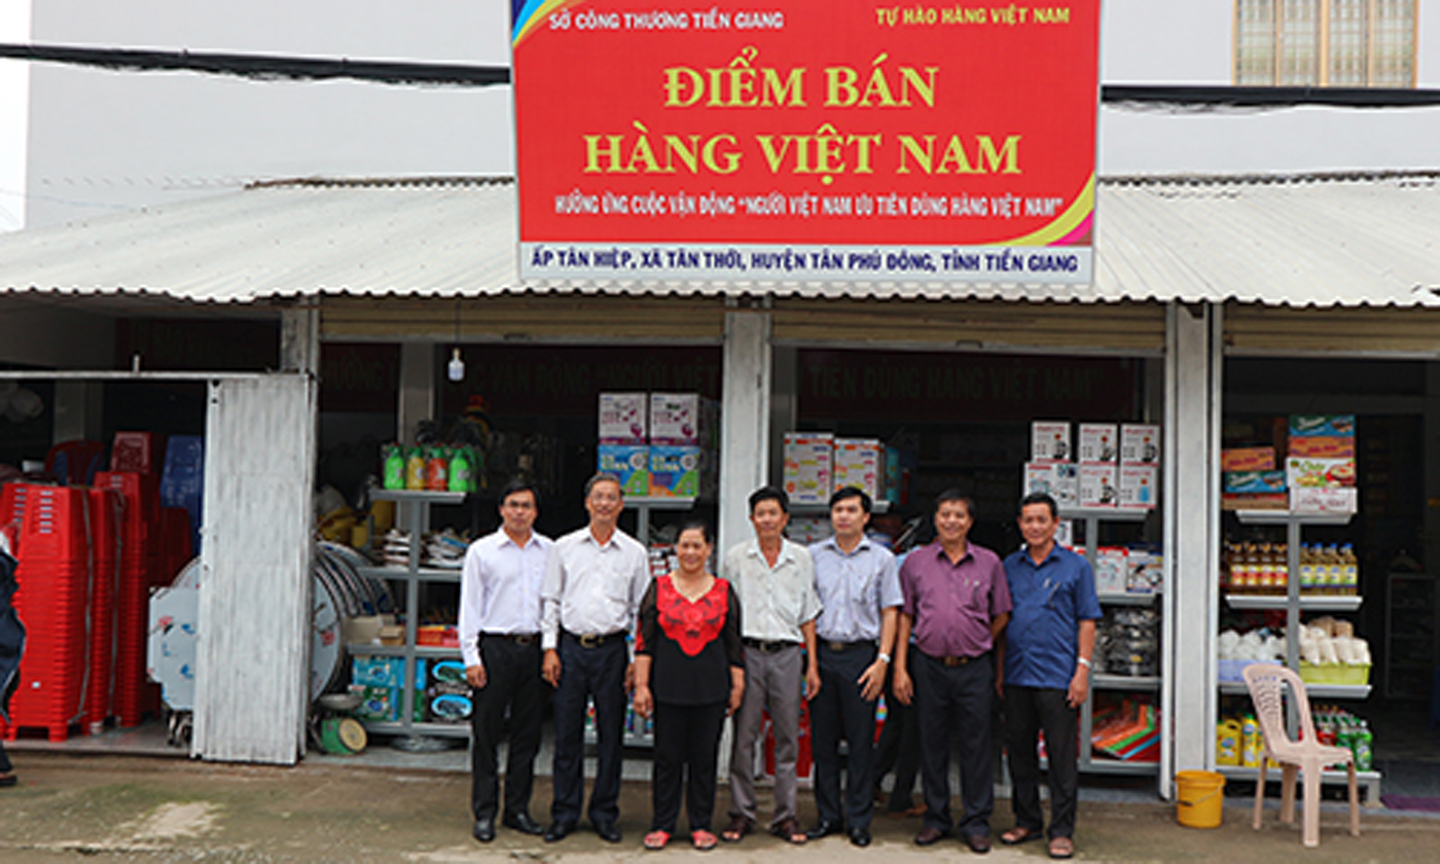 ẢNH 2: Một “Điểm bán hàng Việt Nam” trên địa bàn huyện Tân Phú Đông, tỉnh Tiền Giang.